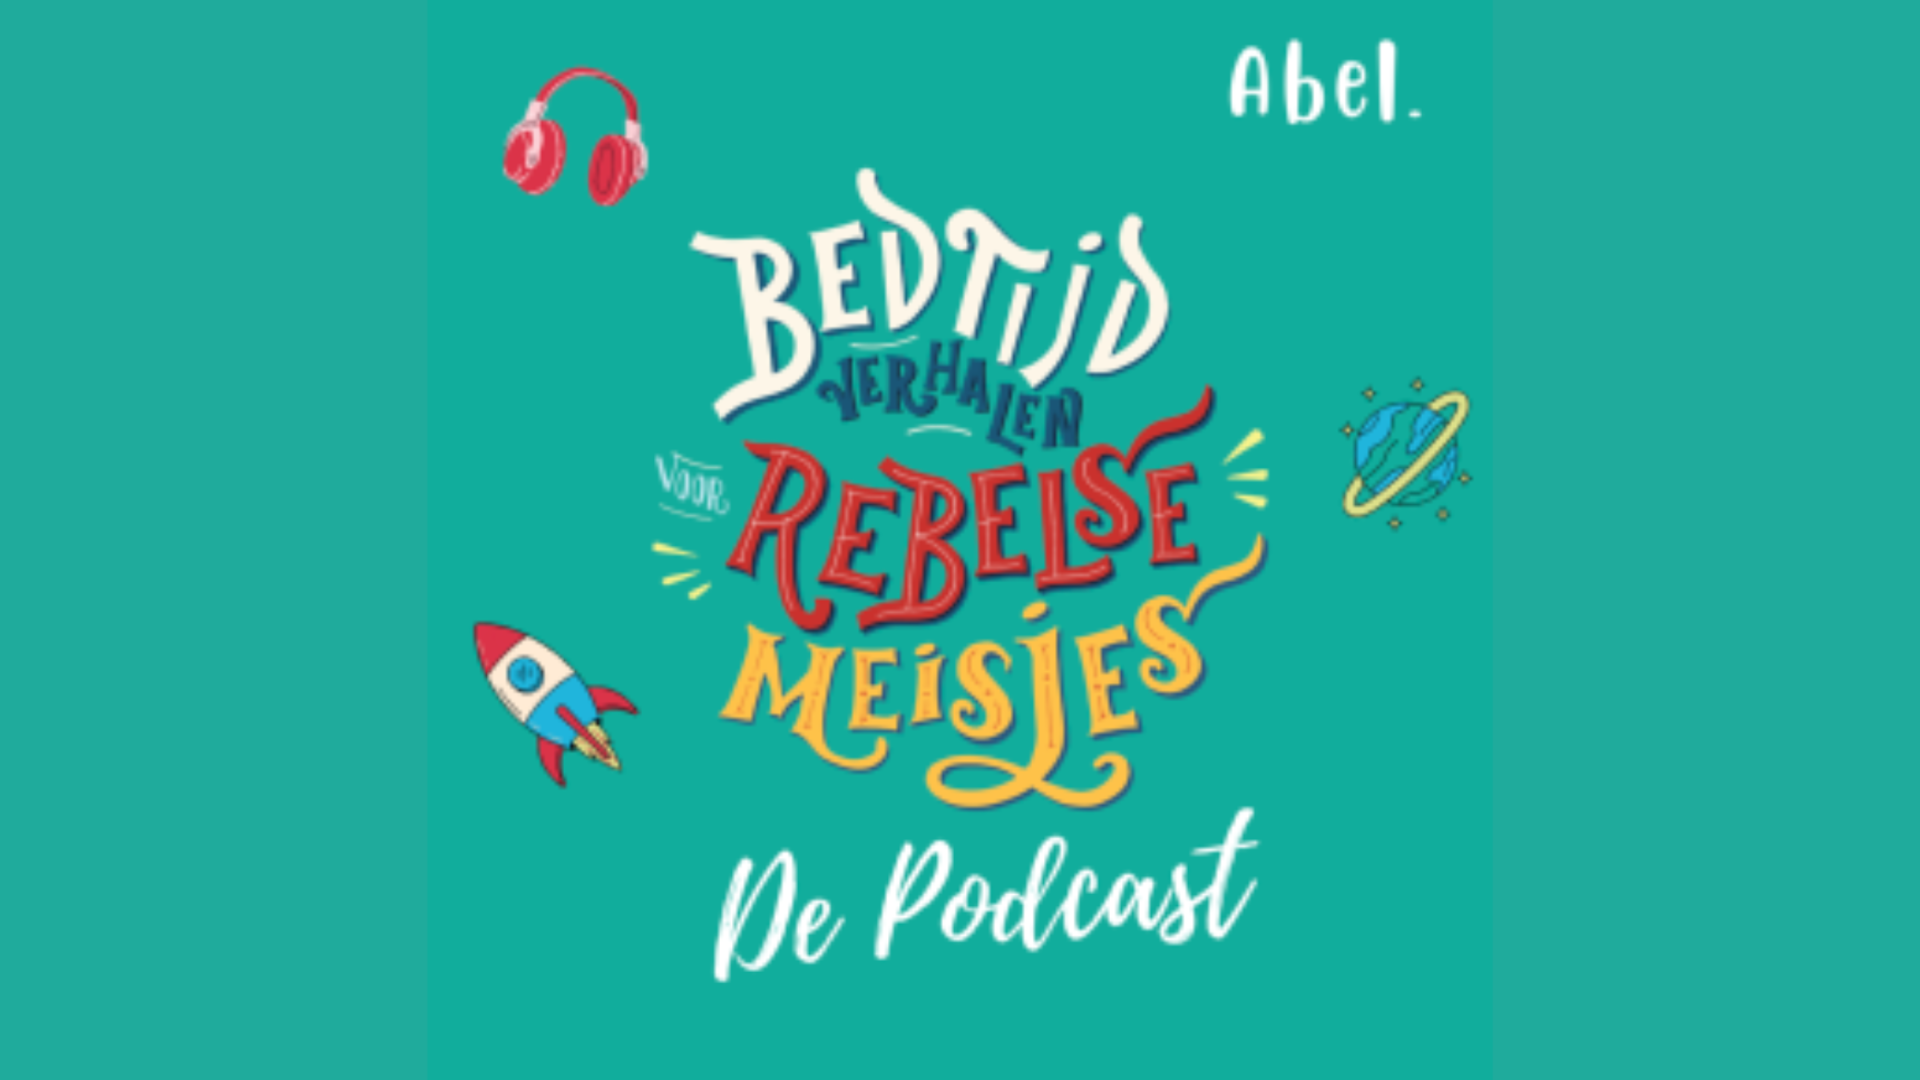 Bedtijdverhalen voor Rebelse Meisjes De Podcast